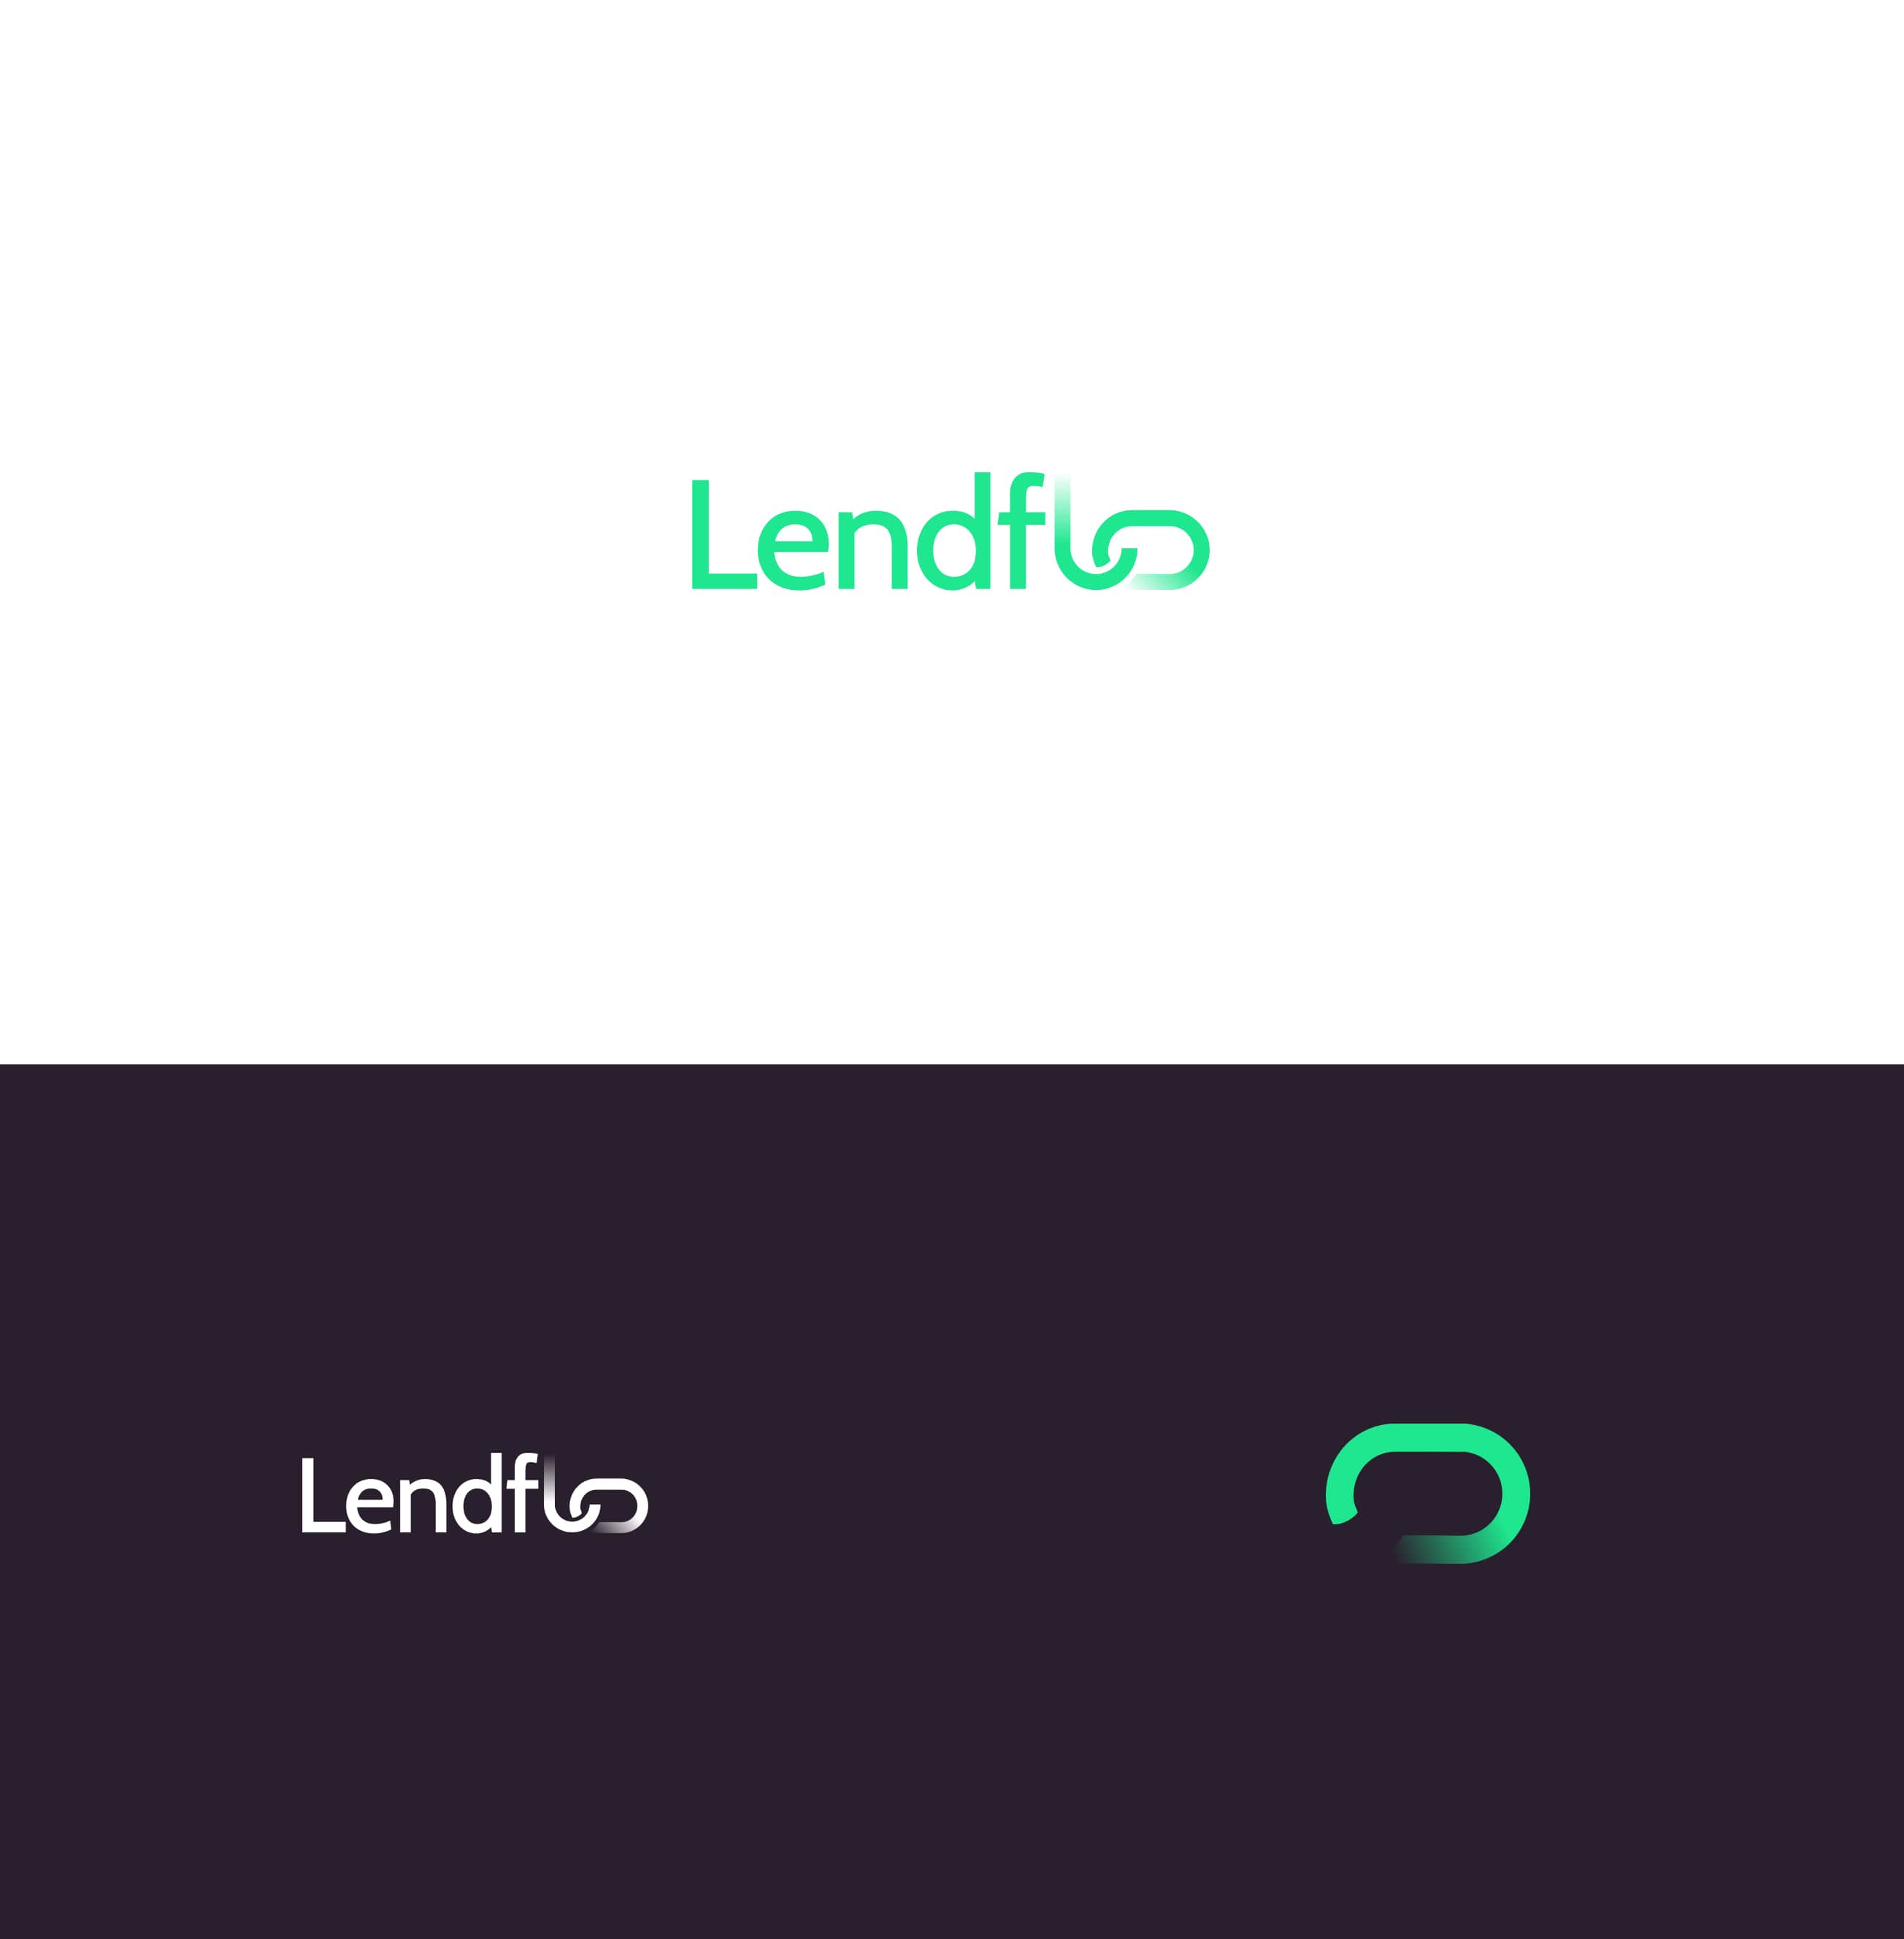 Lendflo-01-1